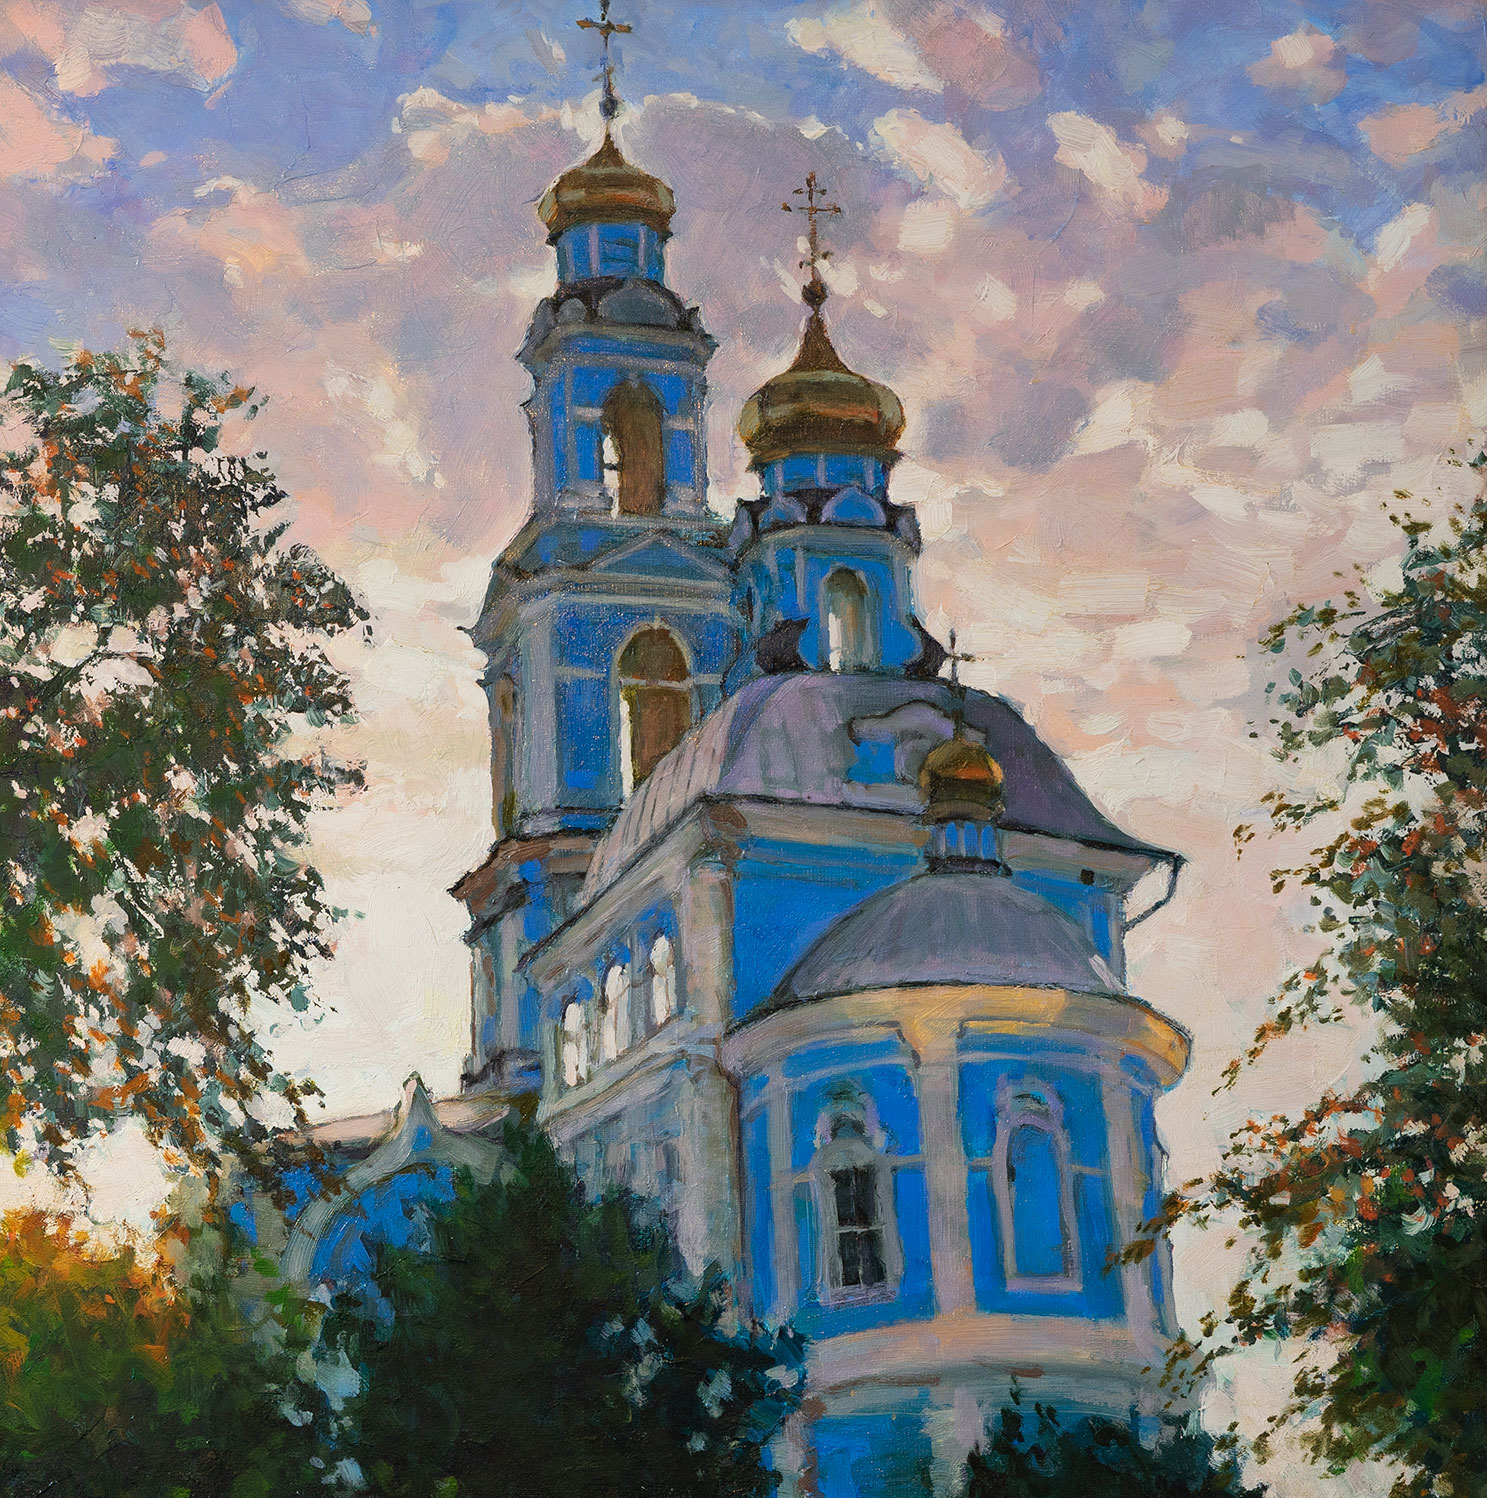 主升天圣殿 - 1, Sergei Prokhorov, 买画 油